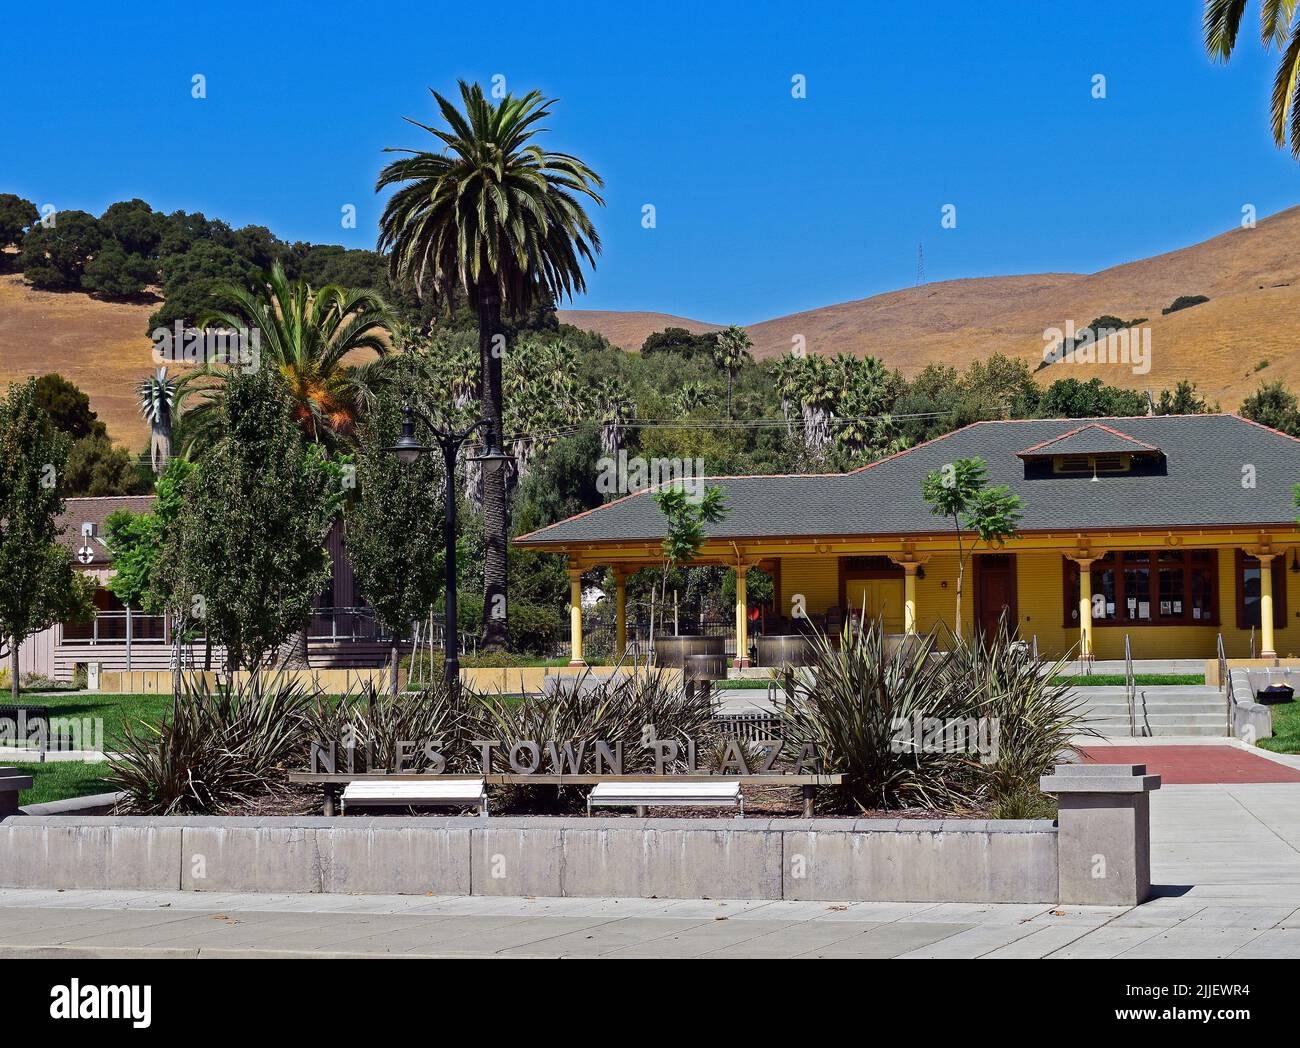 Niles Town Plaza, Freemont, California Stock Photo